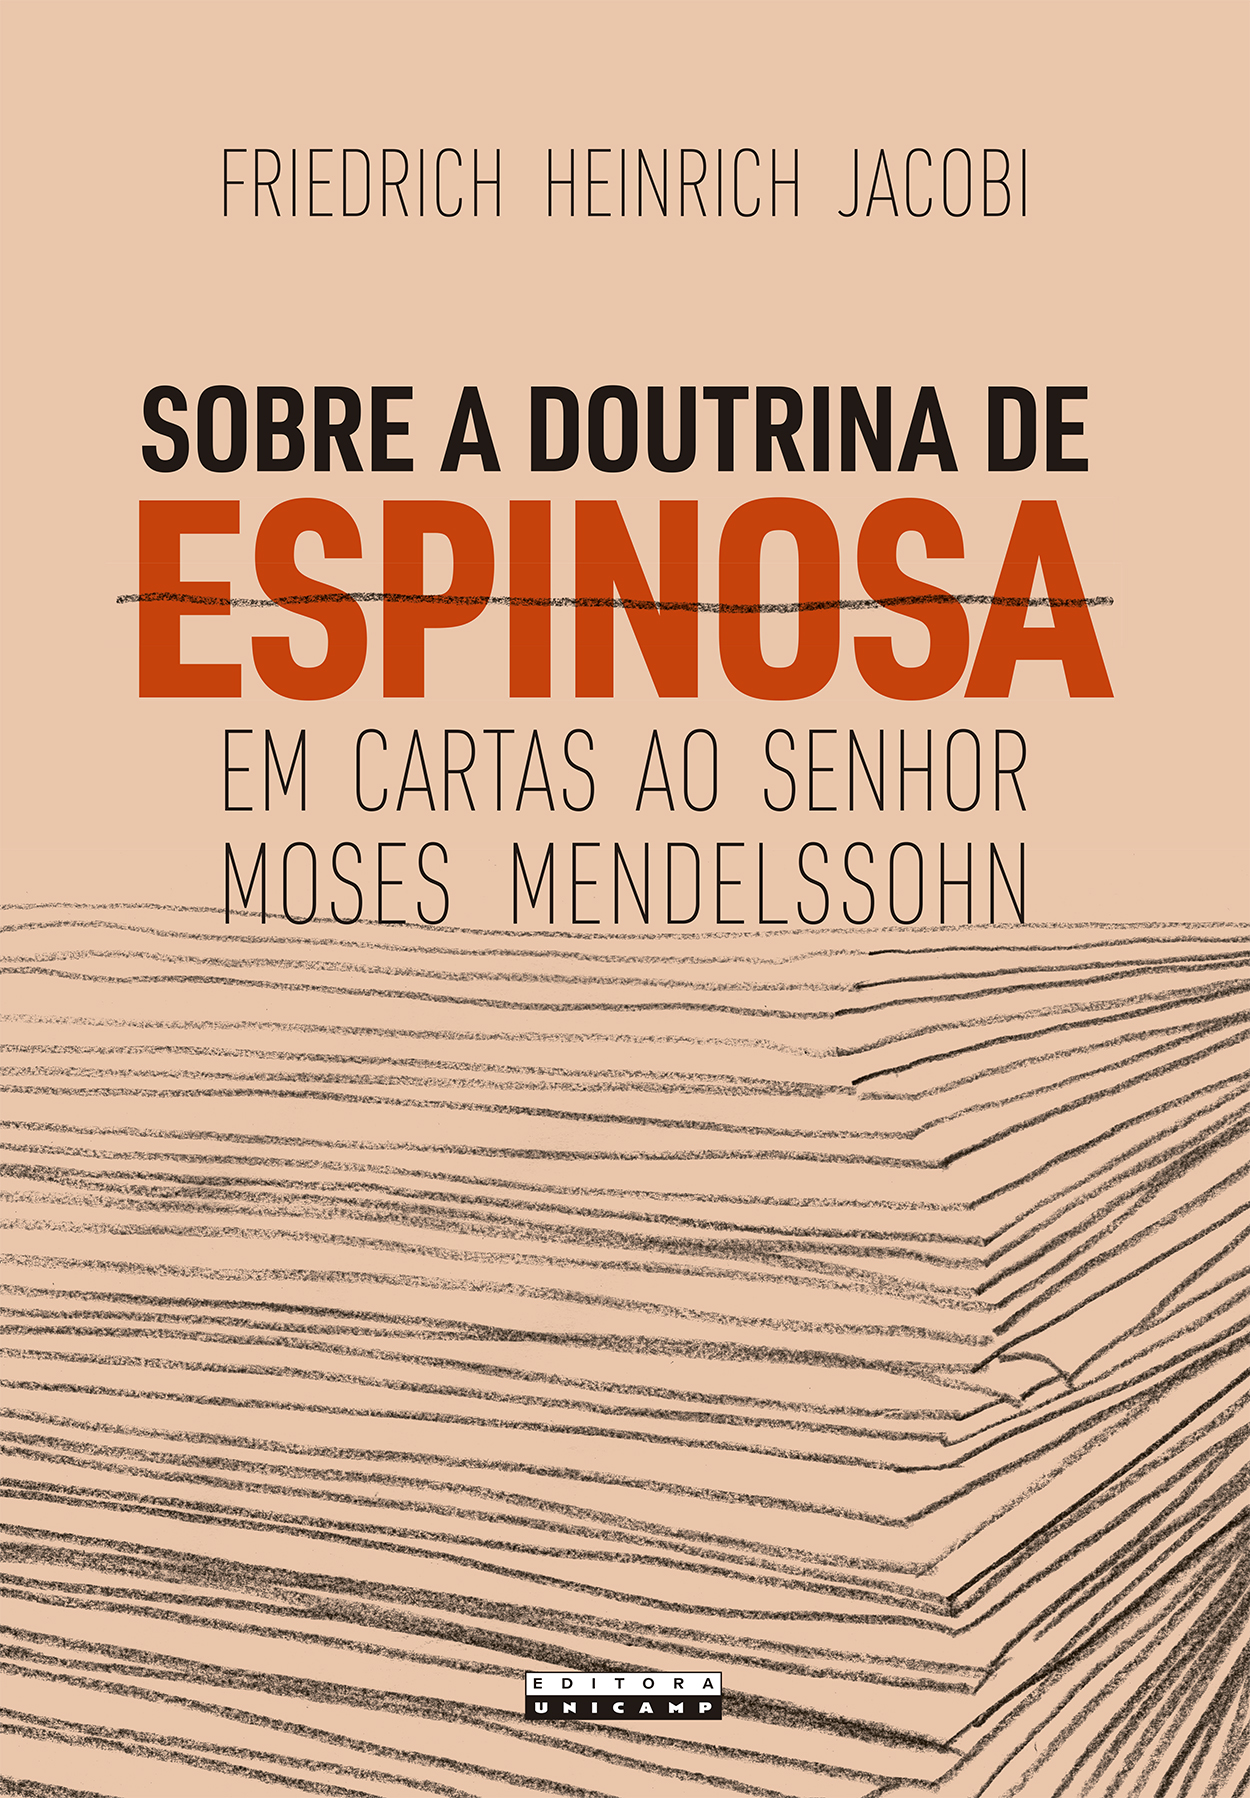 Espinosa subversivo e outros escritos by Grupo Autentica - Issuu